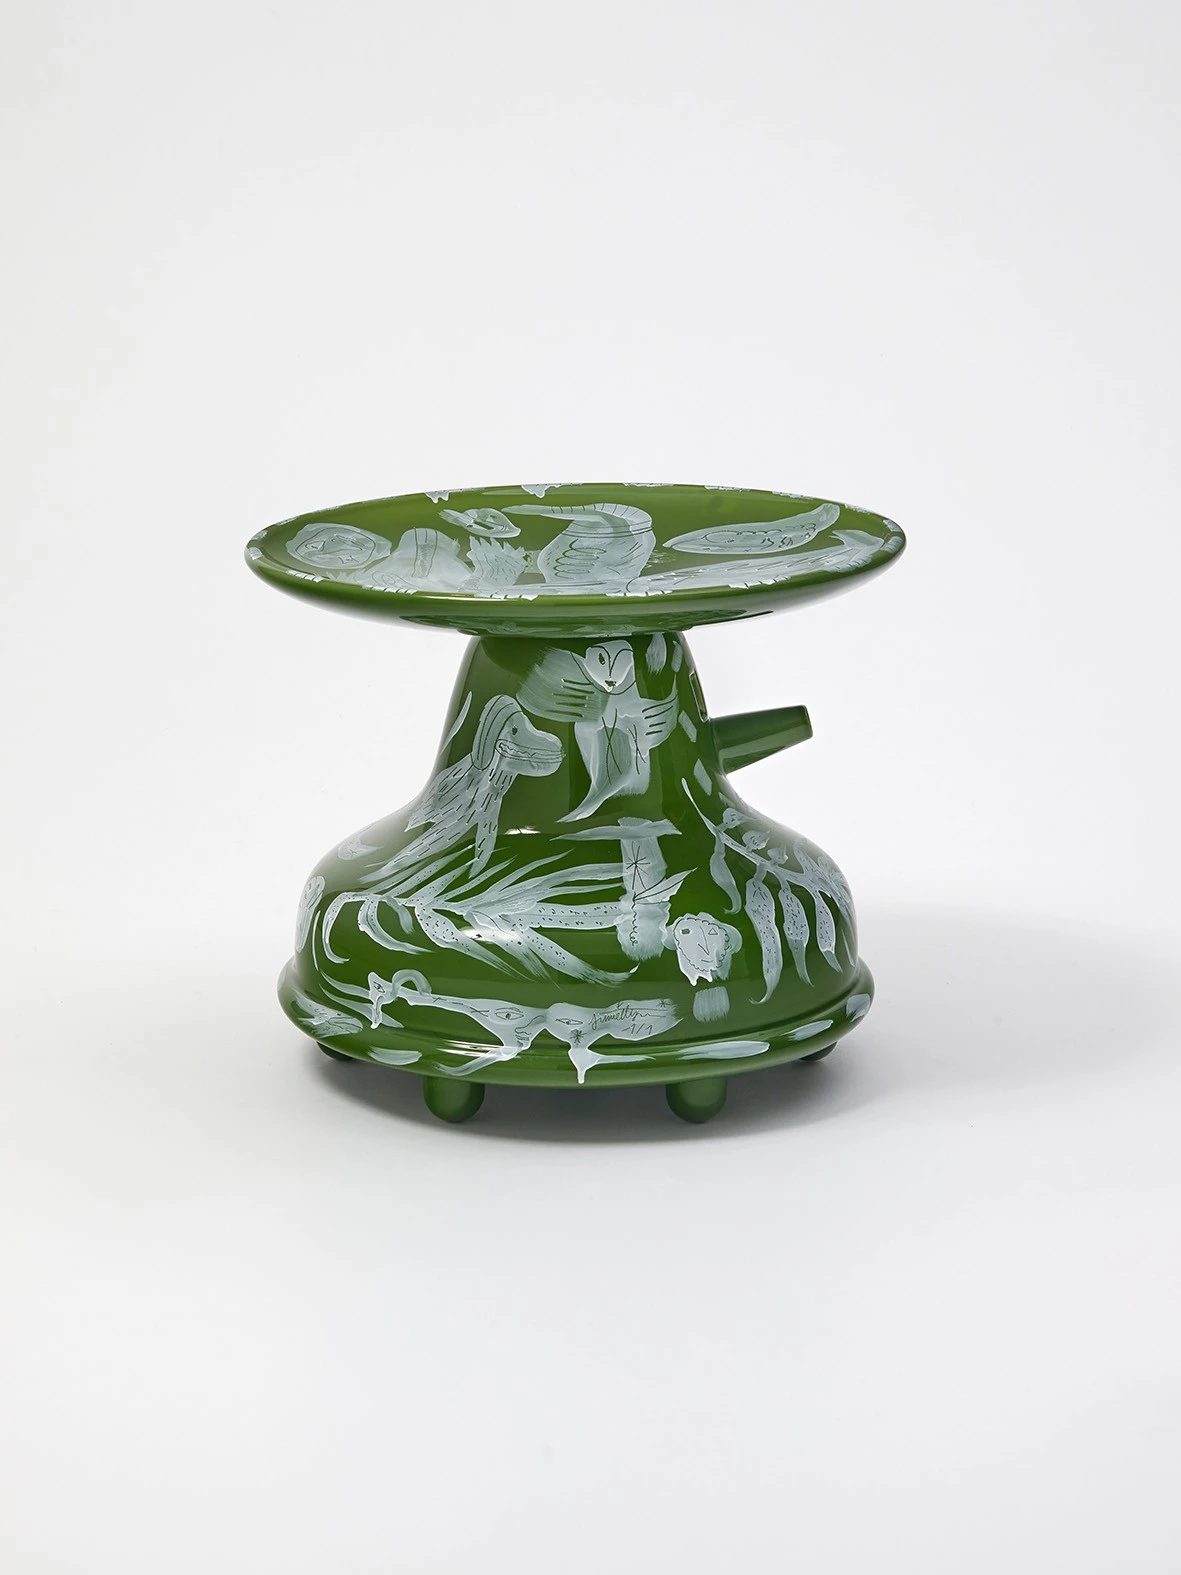 Colonna - Jaime Hayon - Vase - Galerie kreo